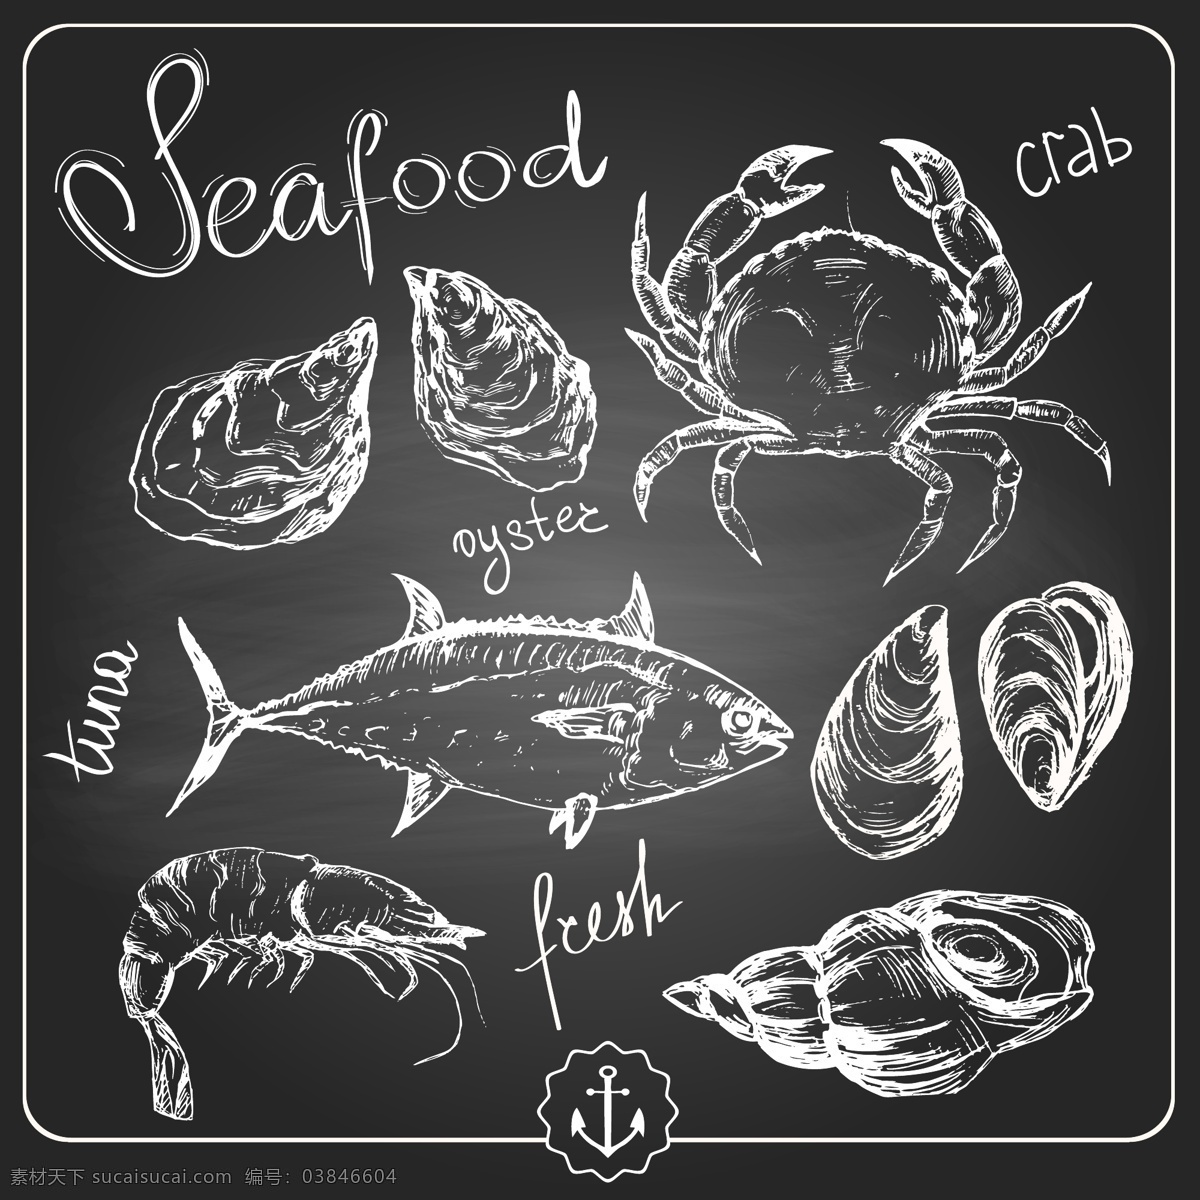 西餐厅 黑板 背景 粉笔 字画 菜单 矢量 西餐 食物 简约 卡通 设计素材 粉笔字 平面素材